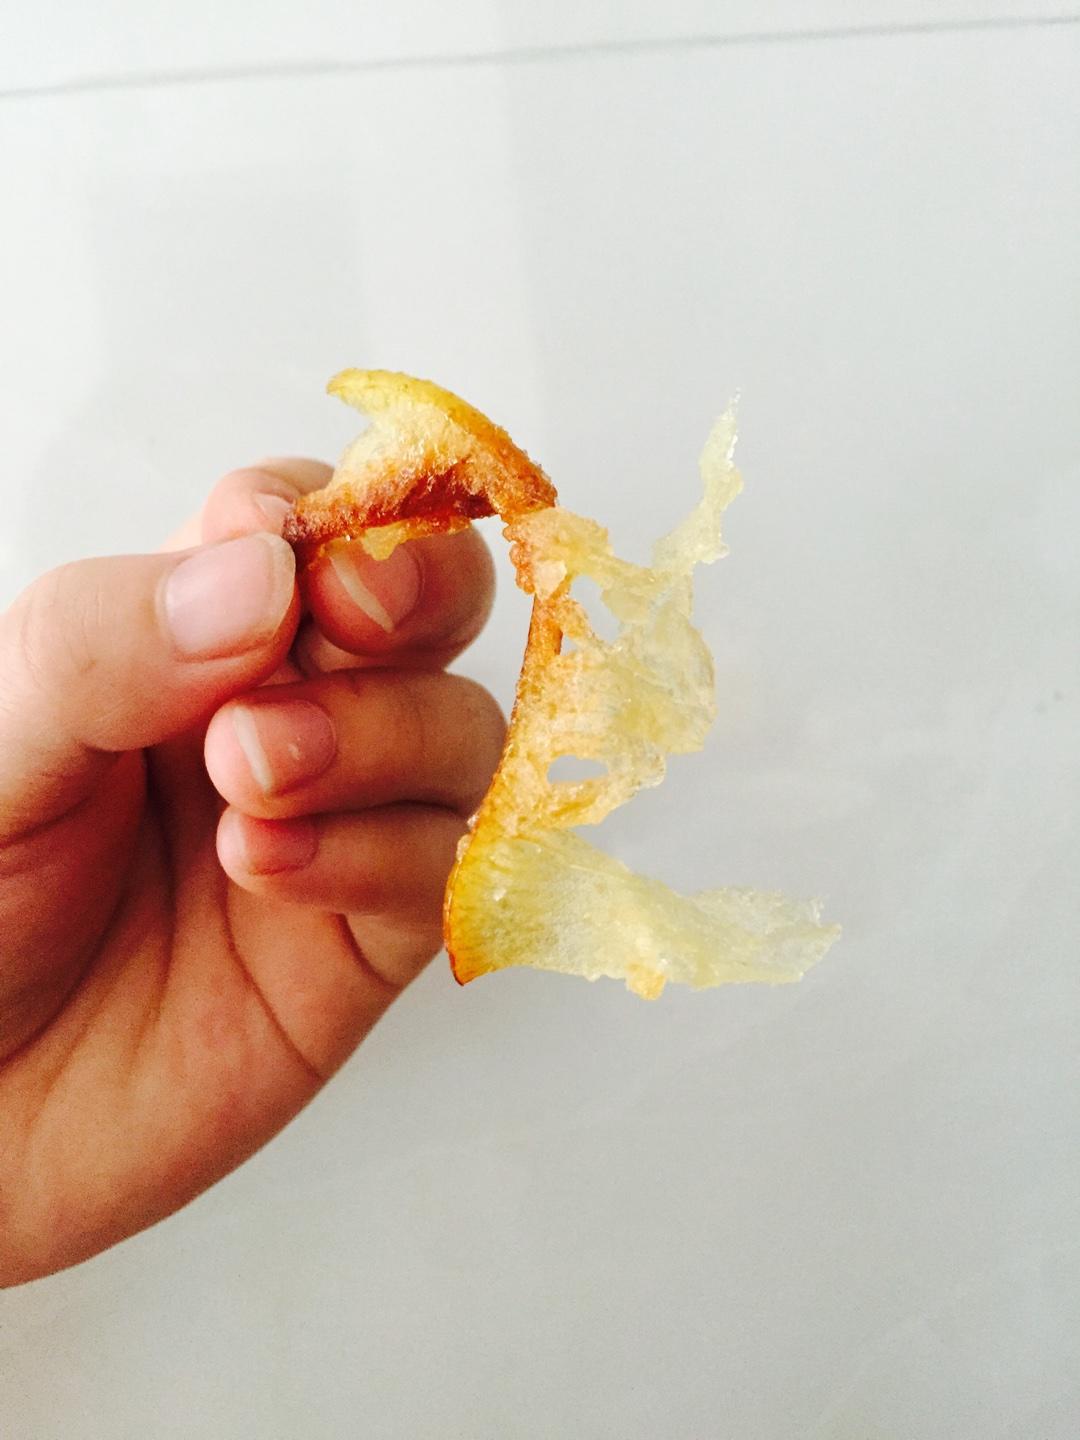 别扔柚子皮 可以做柚子糖勒